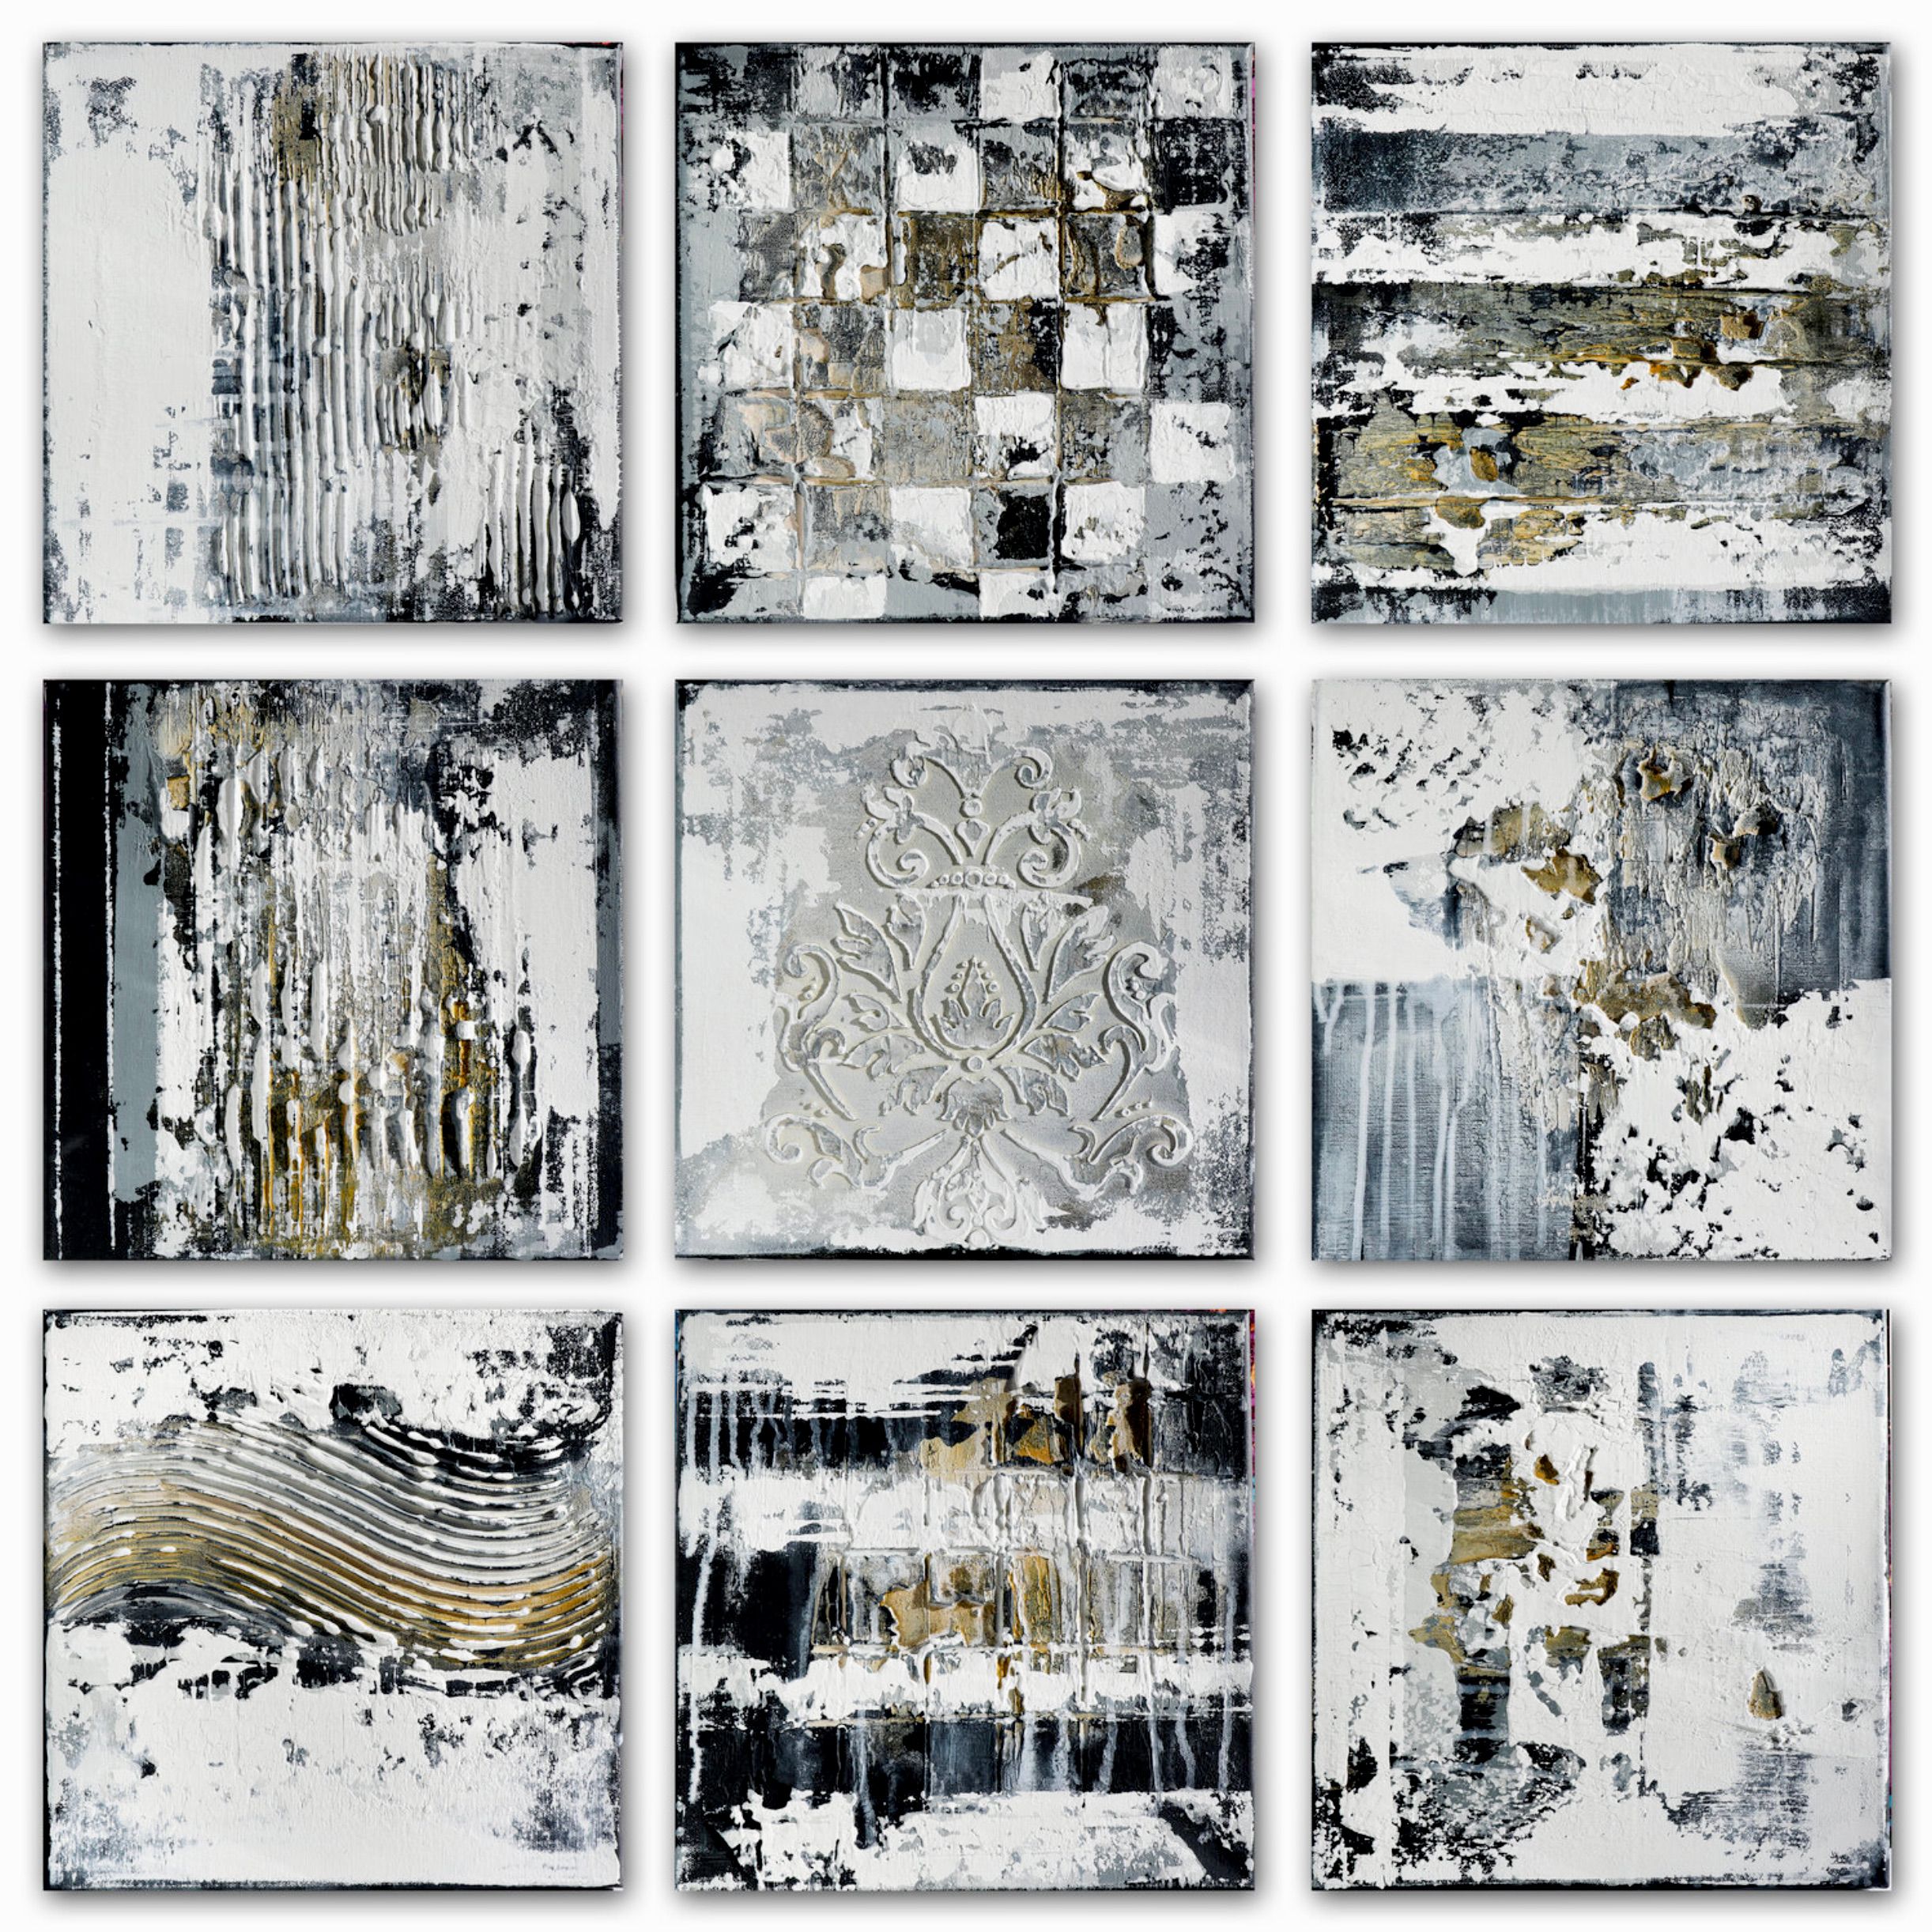 Le tableau expressionniste et abstrait d'Inez Froehlich "ARTEFACTS II" se compose de 9 parties de 30 x 30 cm. Les couleurs naturelles, les tons pastels, le noir, le blanc, le gris et l'or dominent.